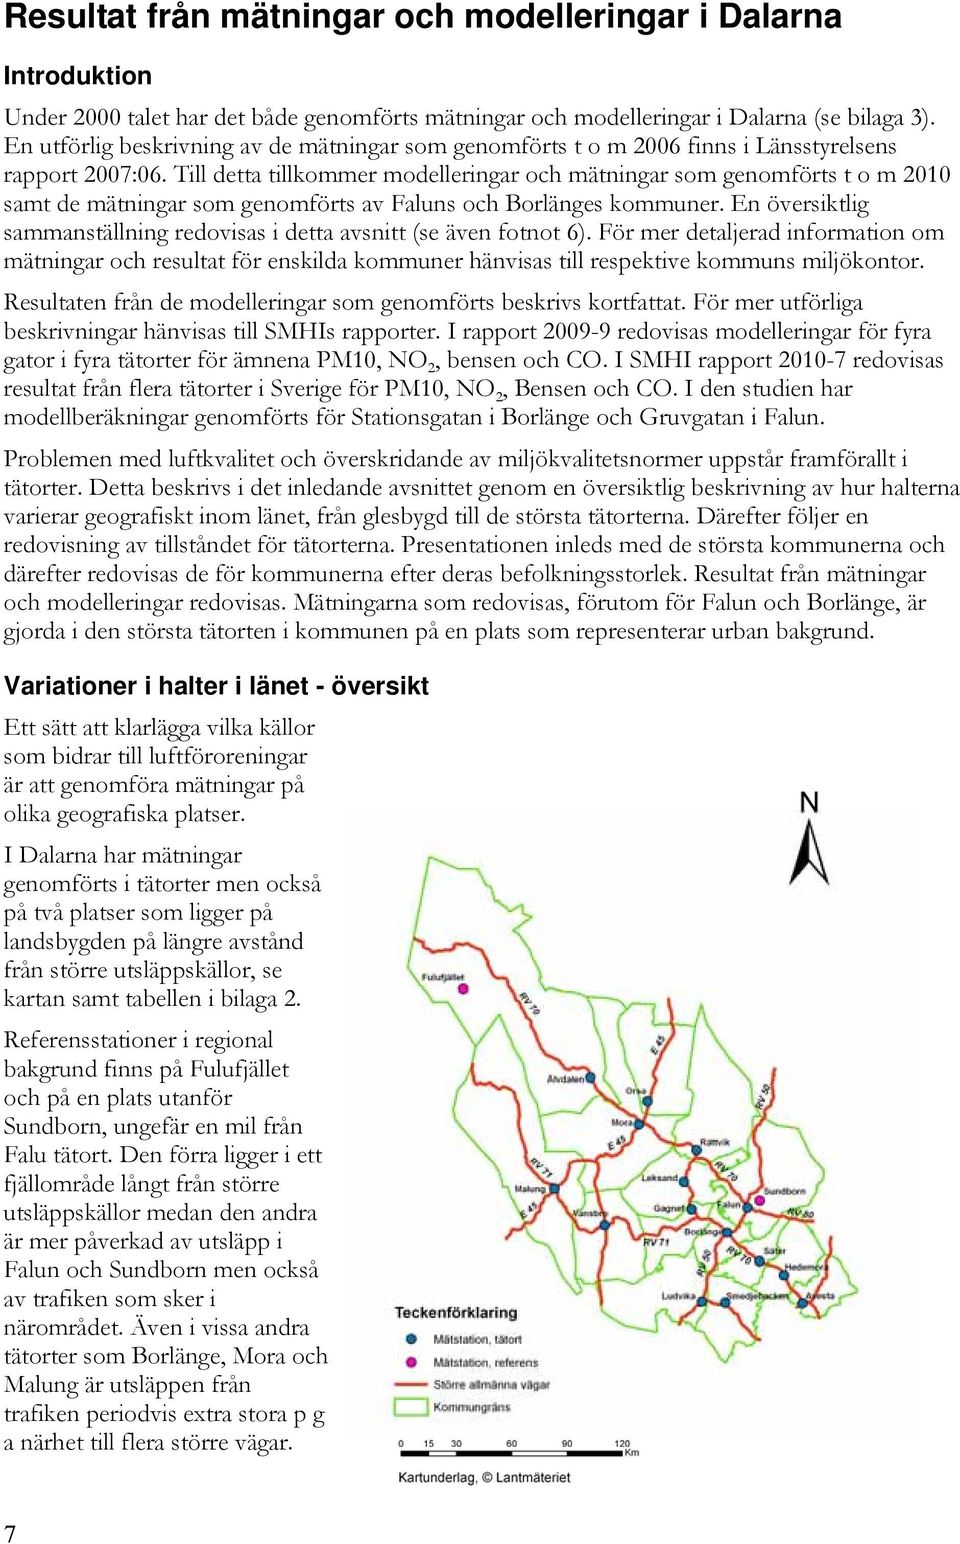 Till detta tillkommer modelleringar och mätningar som genomförts t o m 2010 samt de mätningar som genomförts av Faluns och Borlänges kommuner.